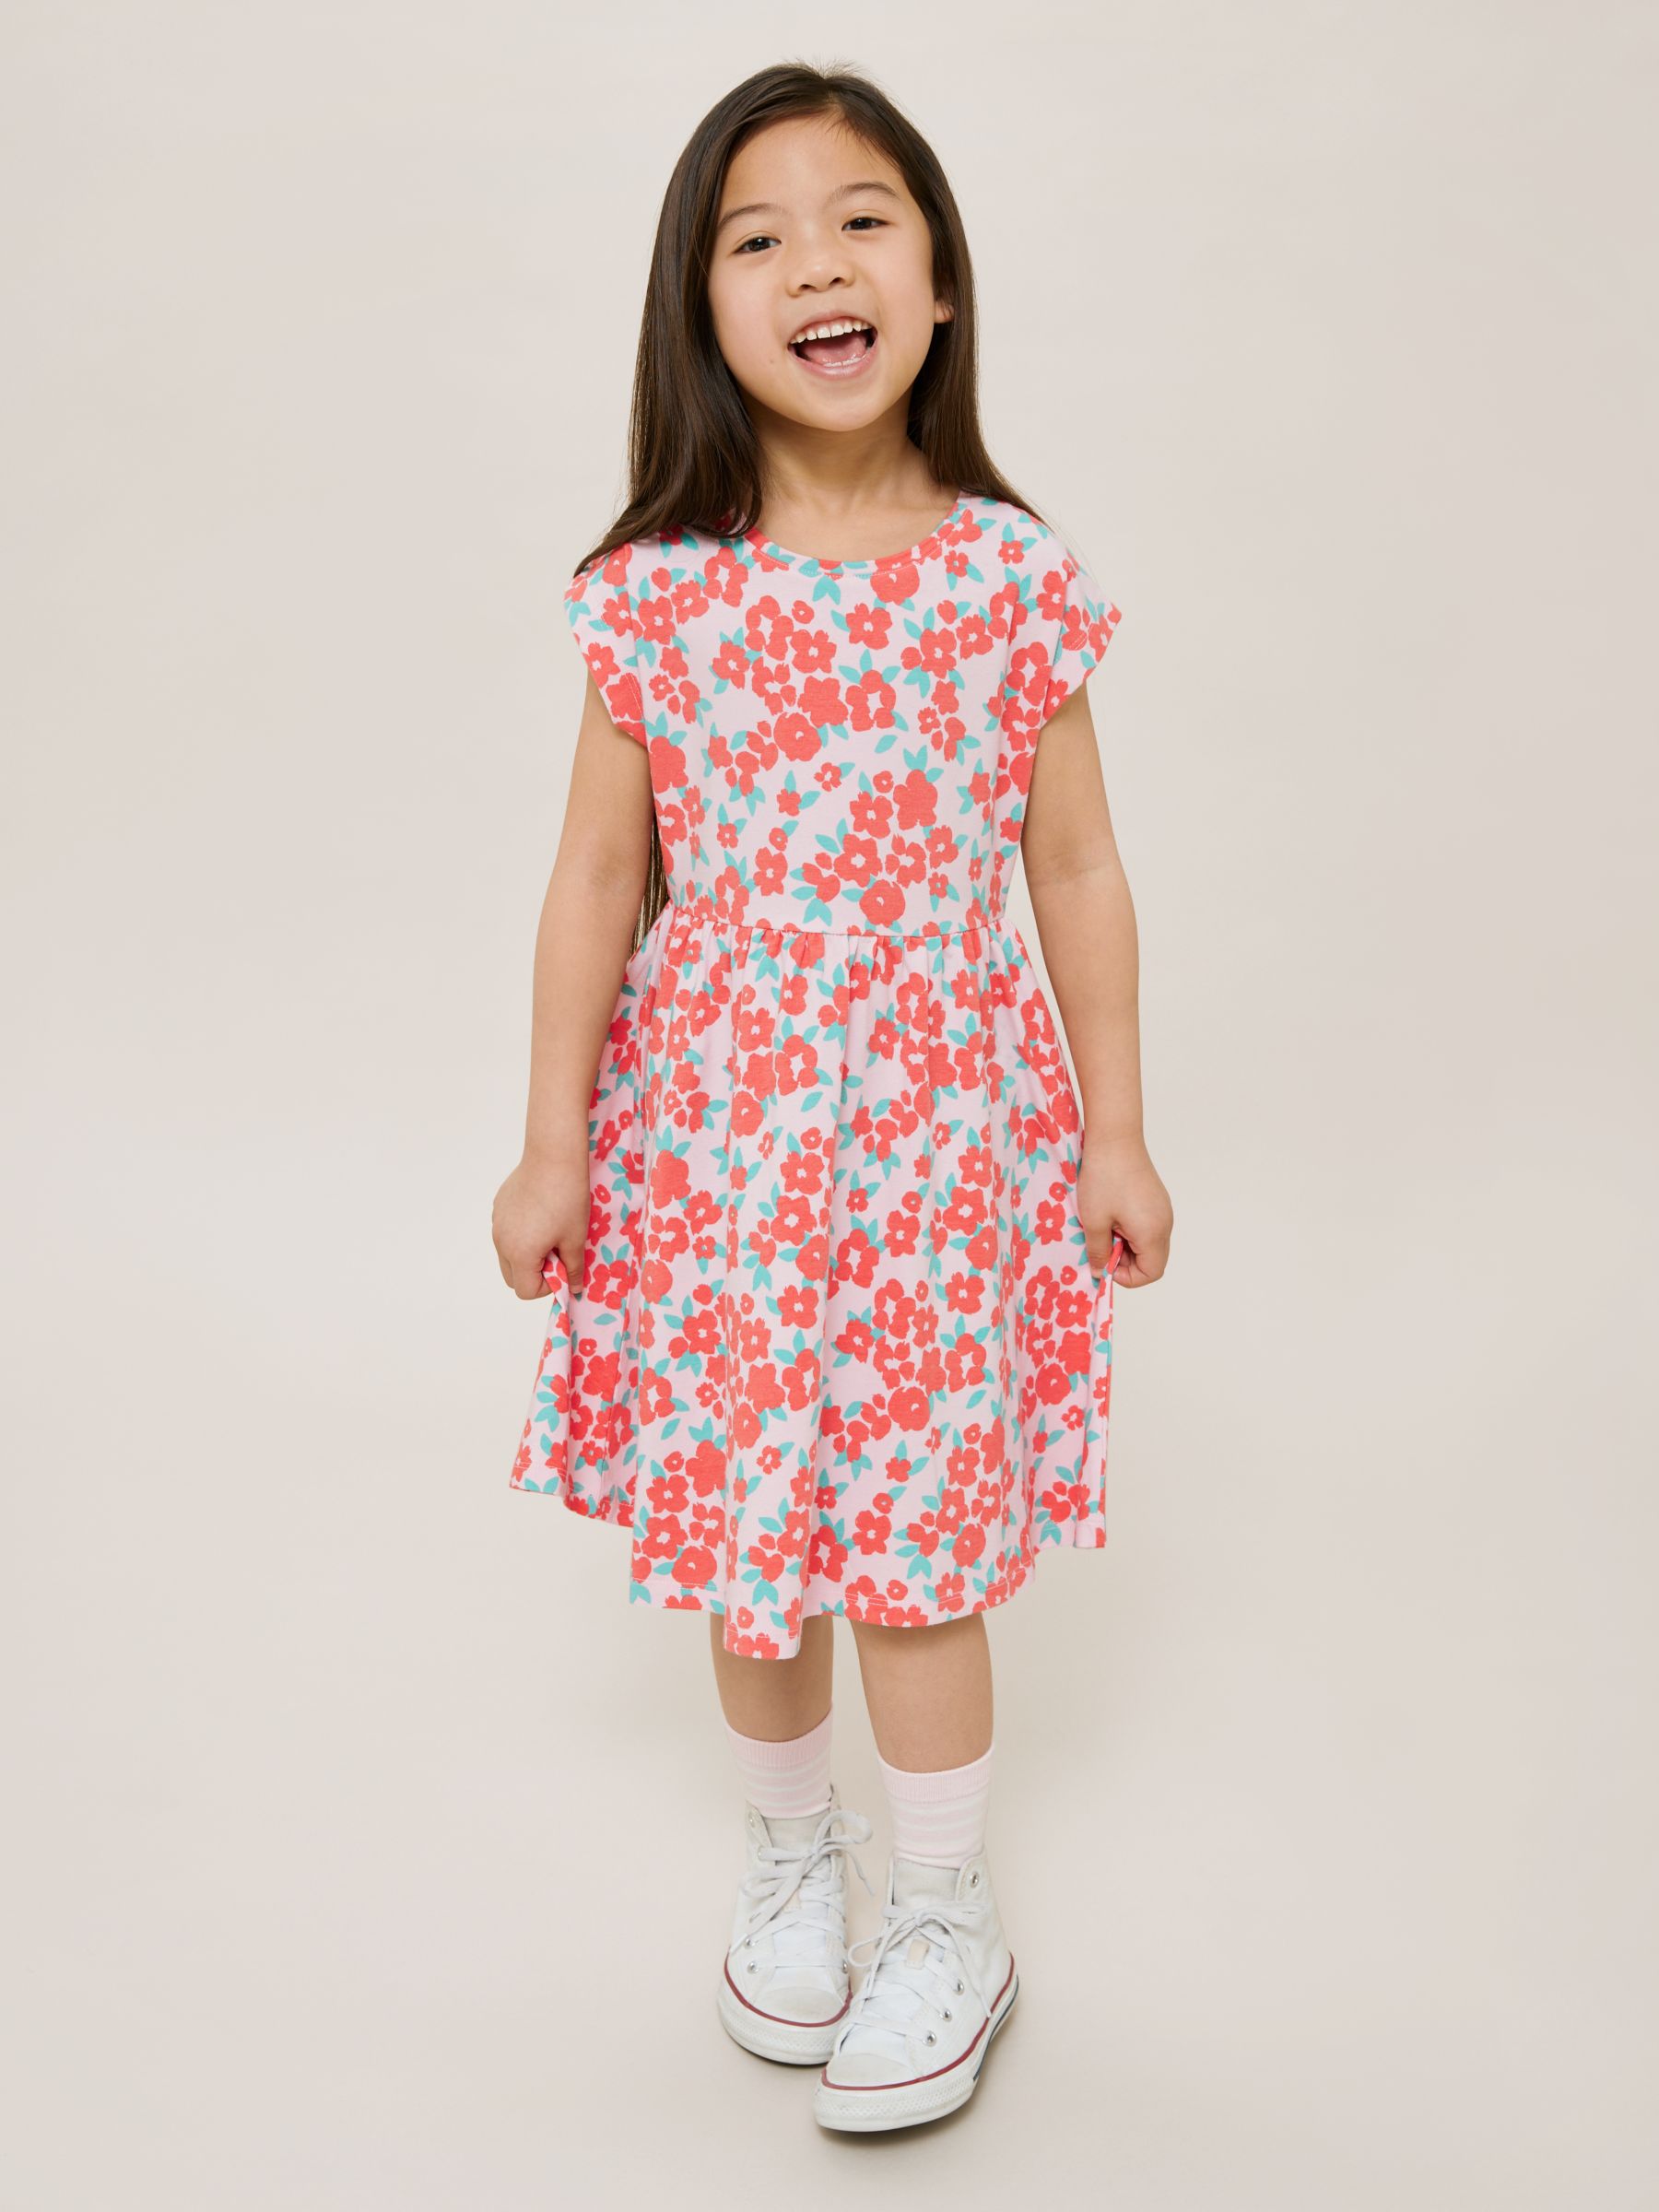 John Lewis Kids' Ditsy Floral Dress, Light Pink